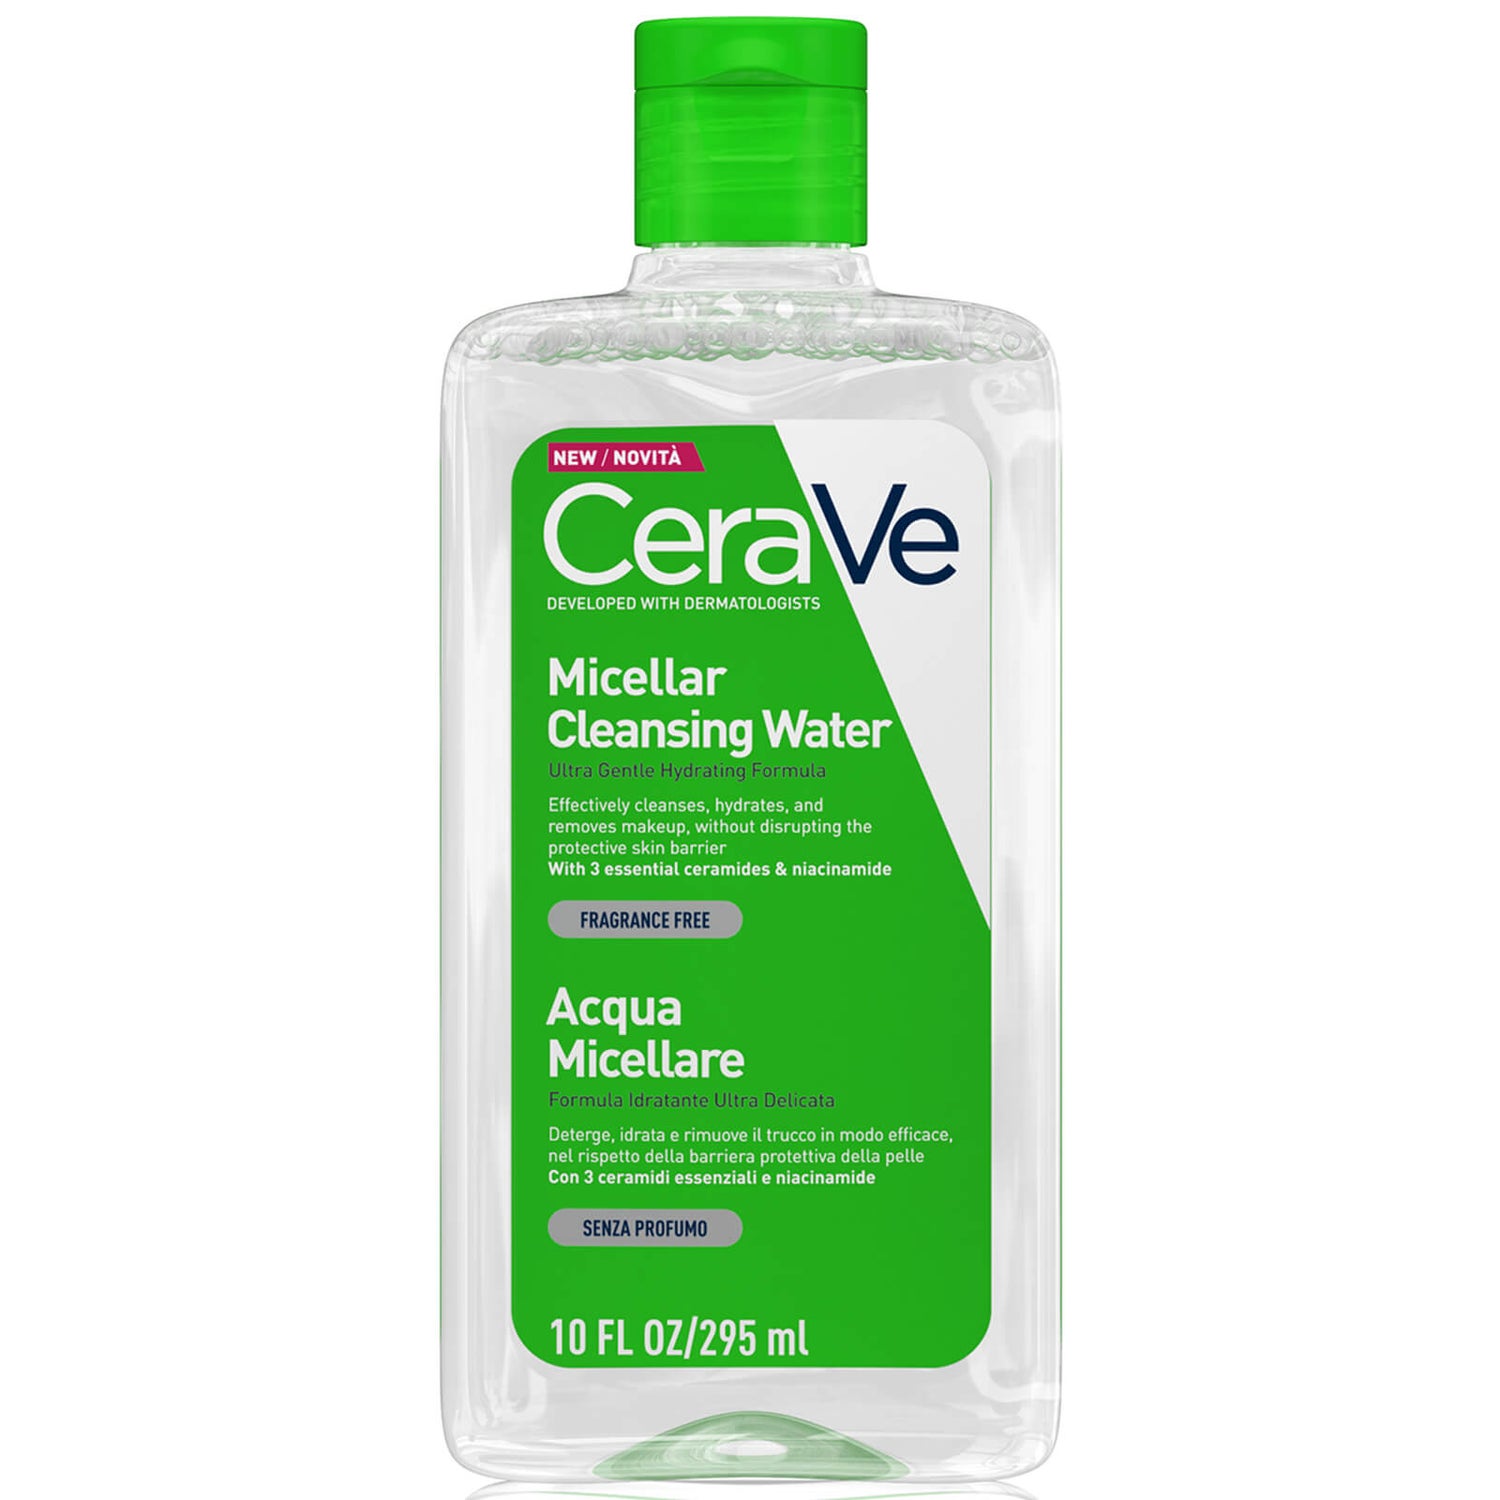 CeraVe Acqua Micellare Detergente con Niacinamide & Ceramides per tutti i tipi di pelle 295ml